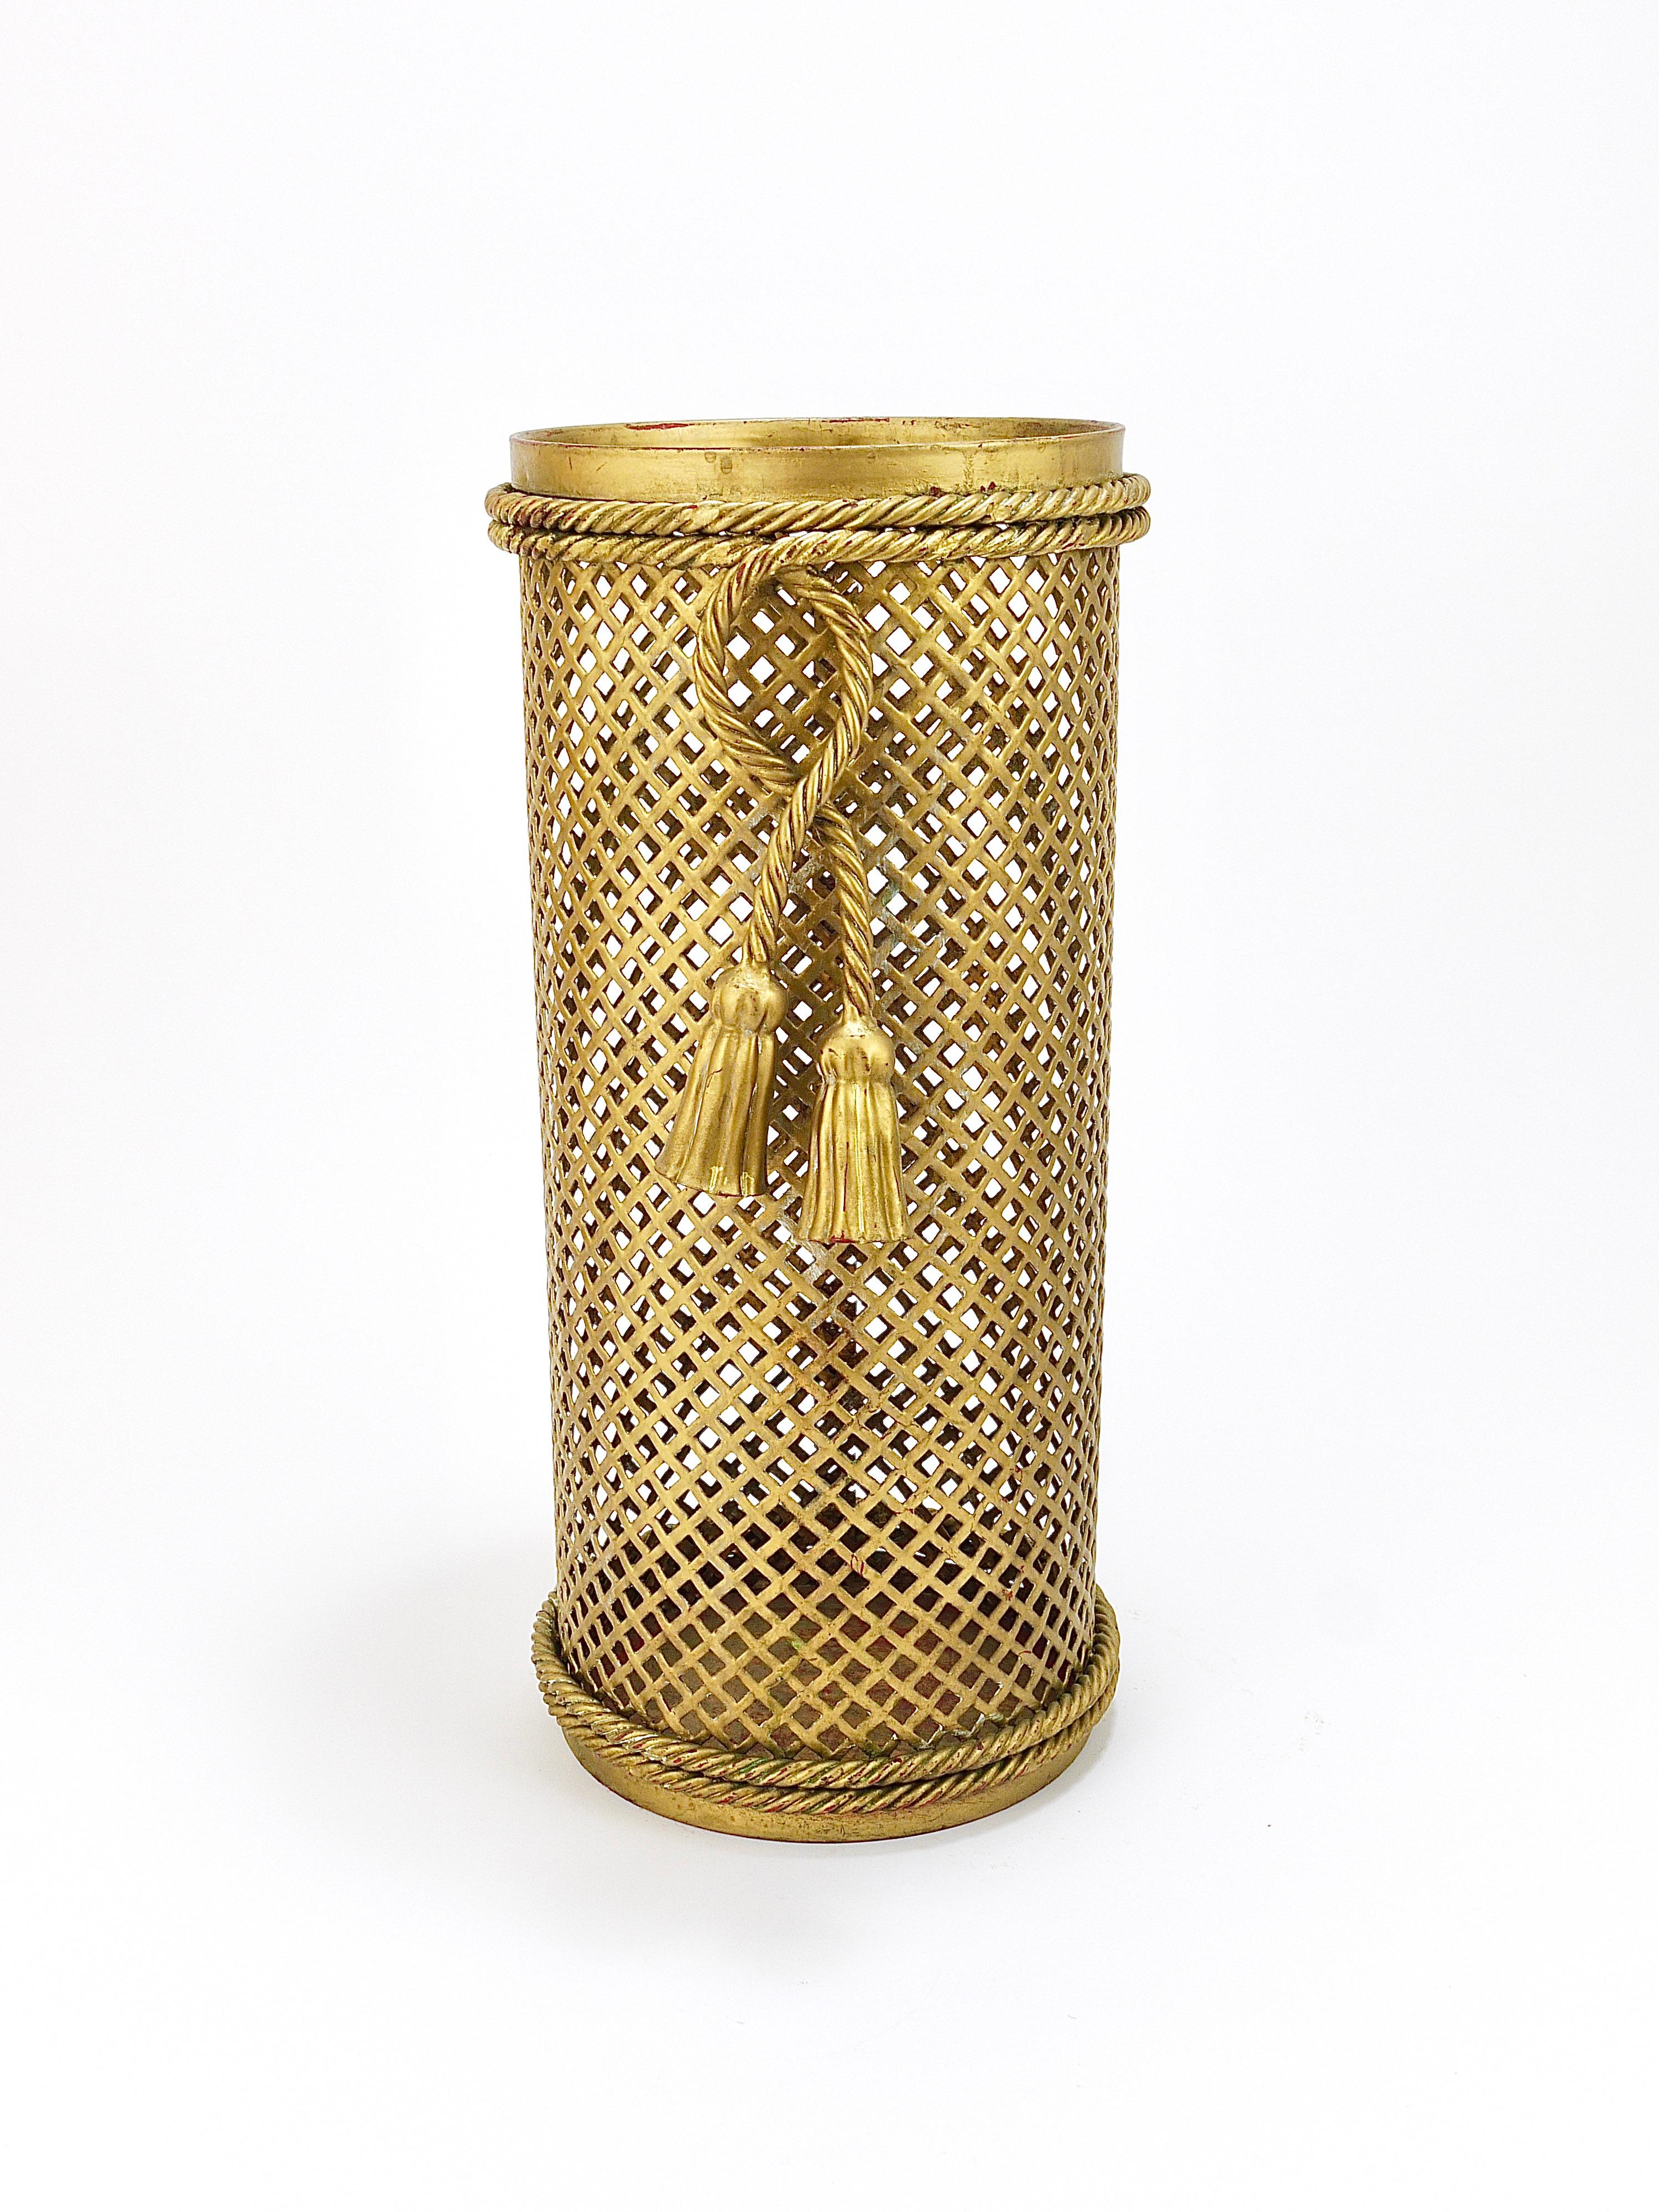 Ein schöner zylindrischer Hollywood Regency Schirmständer aus den 1950er Jahren, hergestellt von Li Puma, Firenze in Italien. Aus gewebtem goldenem Gittermetall, umgeben von einem geknoteten Seil mit zwei Quasten. Kann auch als Papierkorb /